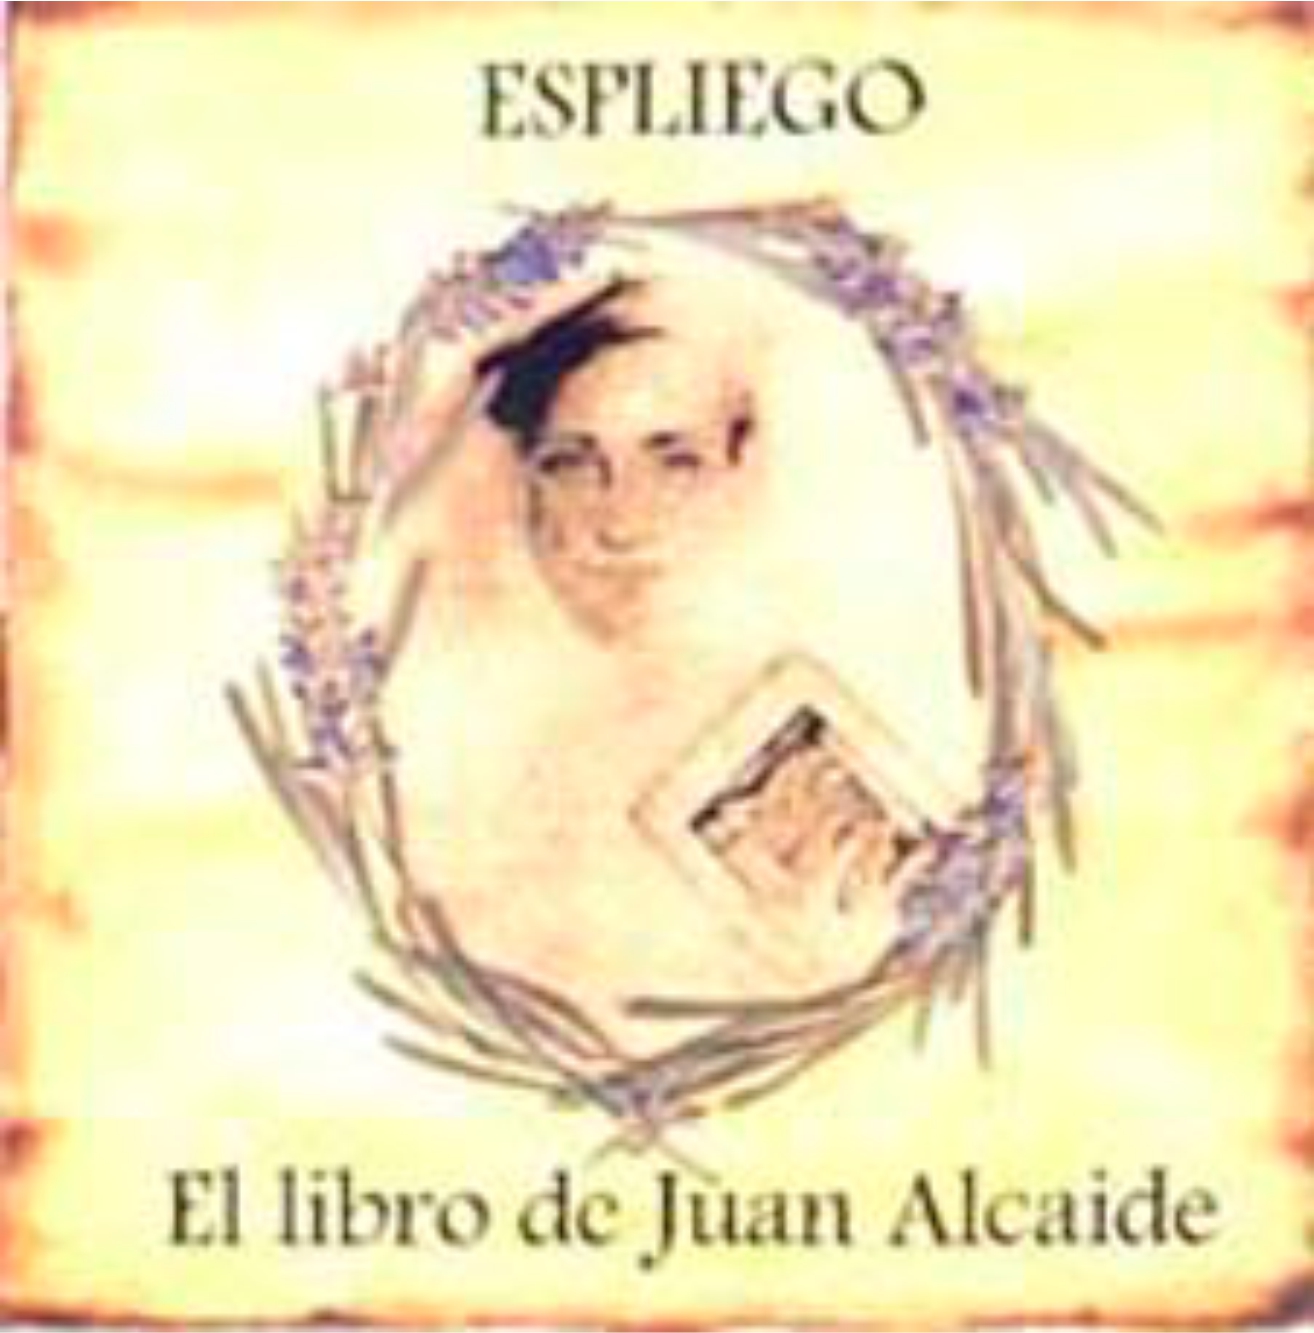 "El libro de Juan Alcaide" (2001)